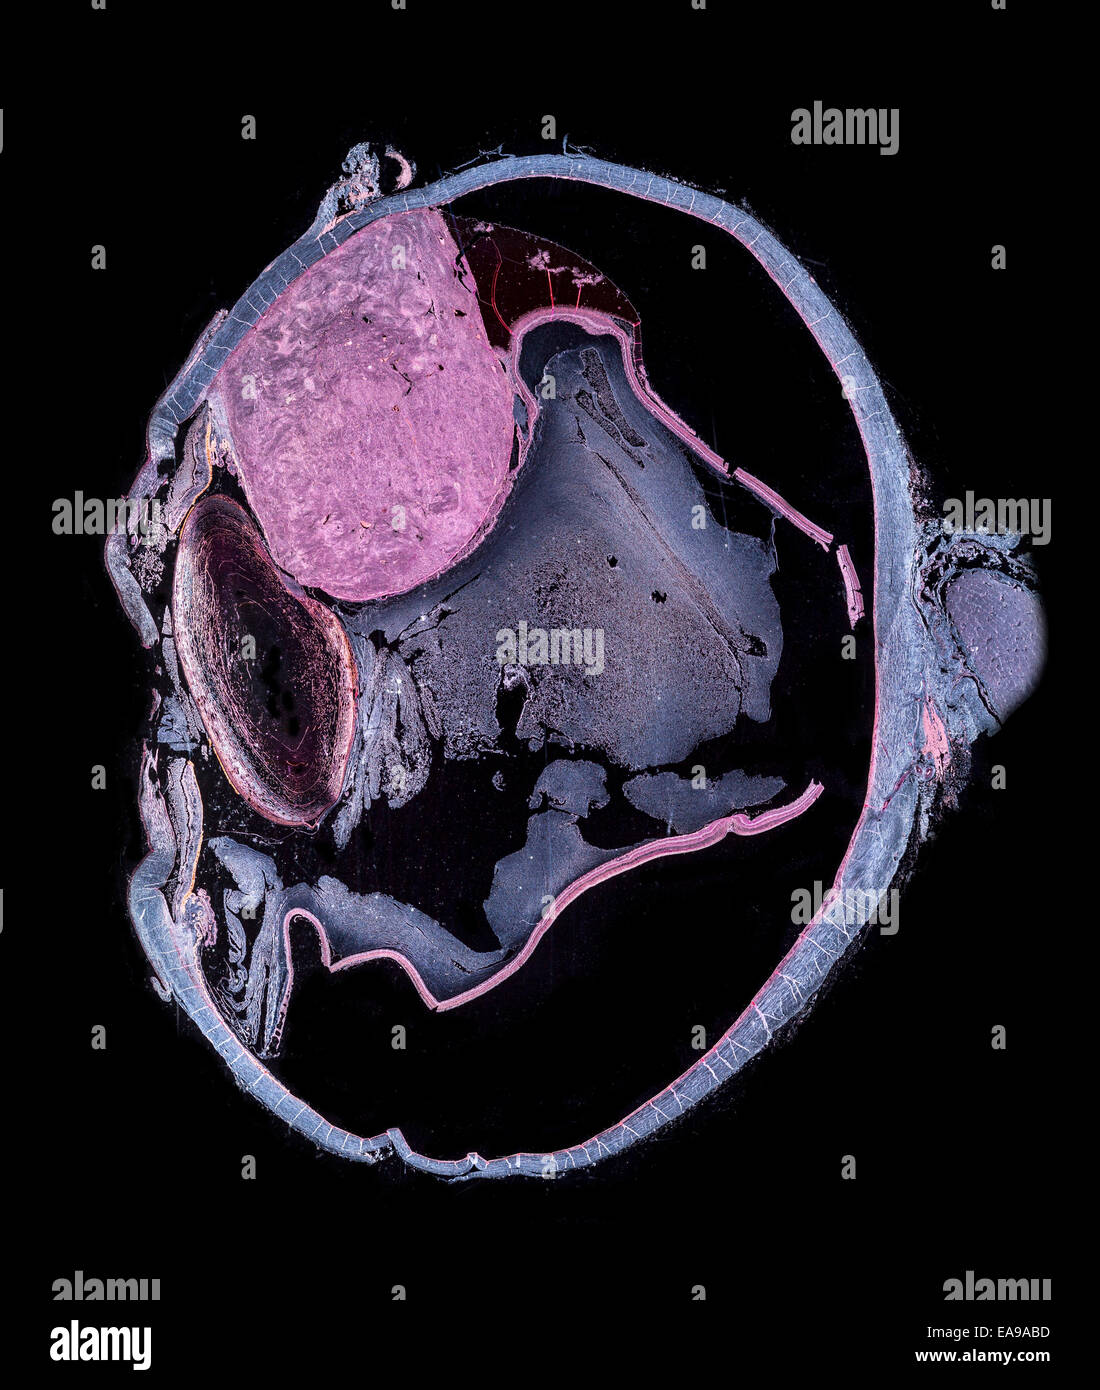 Menschliche Auge Abschnitt zeigt Struktur mit erkrankten pigmentierten Tumor (große rosa Fläche) Dunkelfeld Mikrophotographie Stockfoto